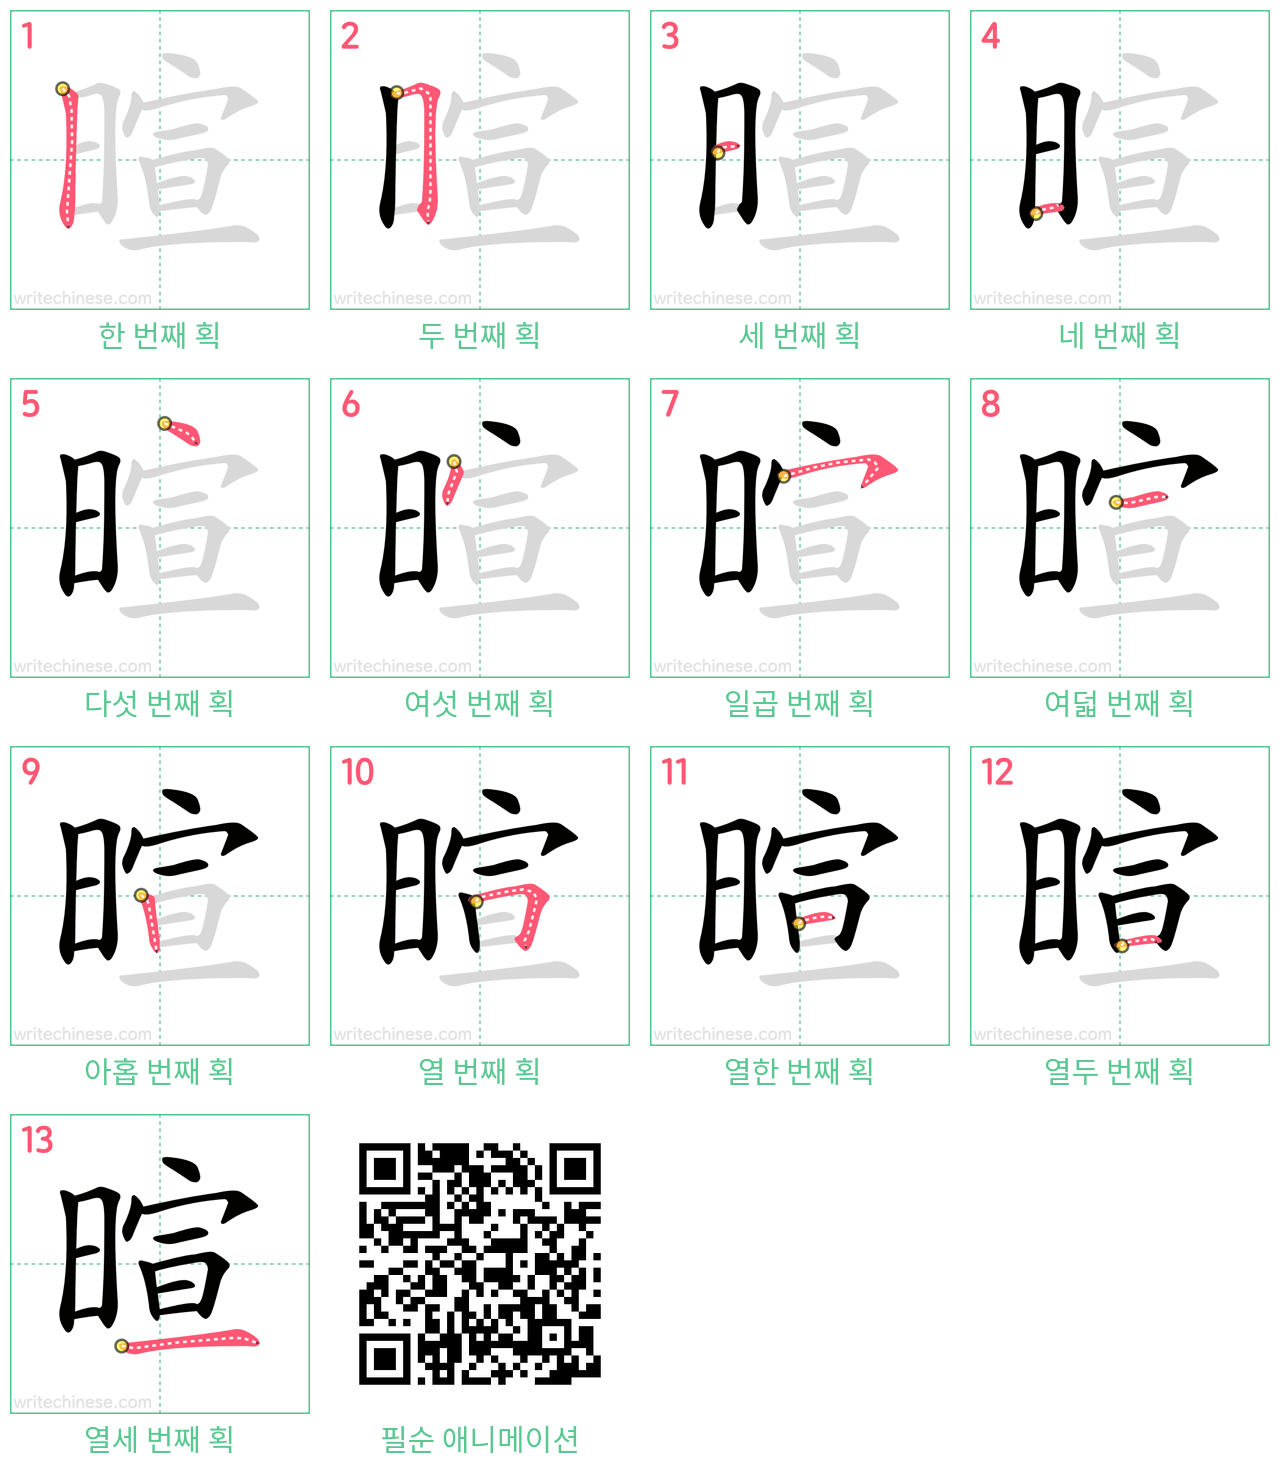 暄 step-by-step stroke order diagrams